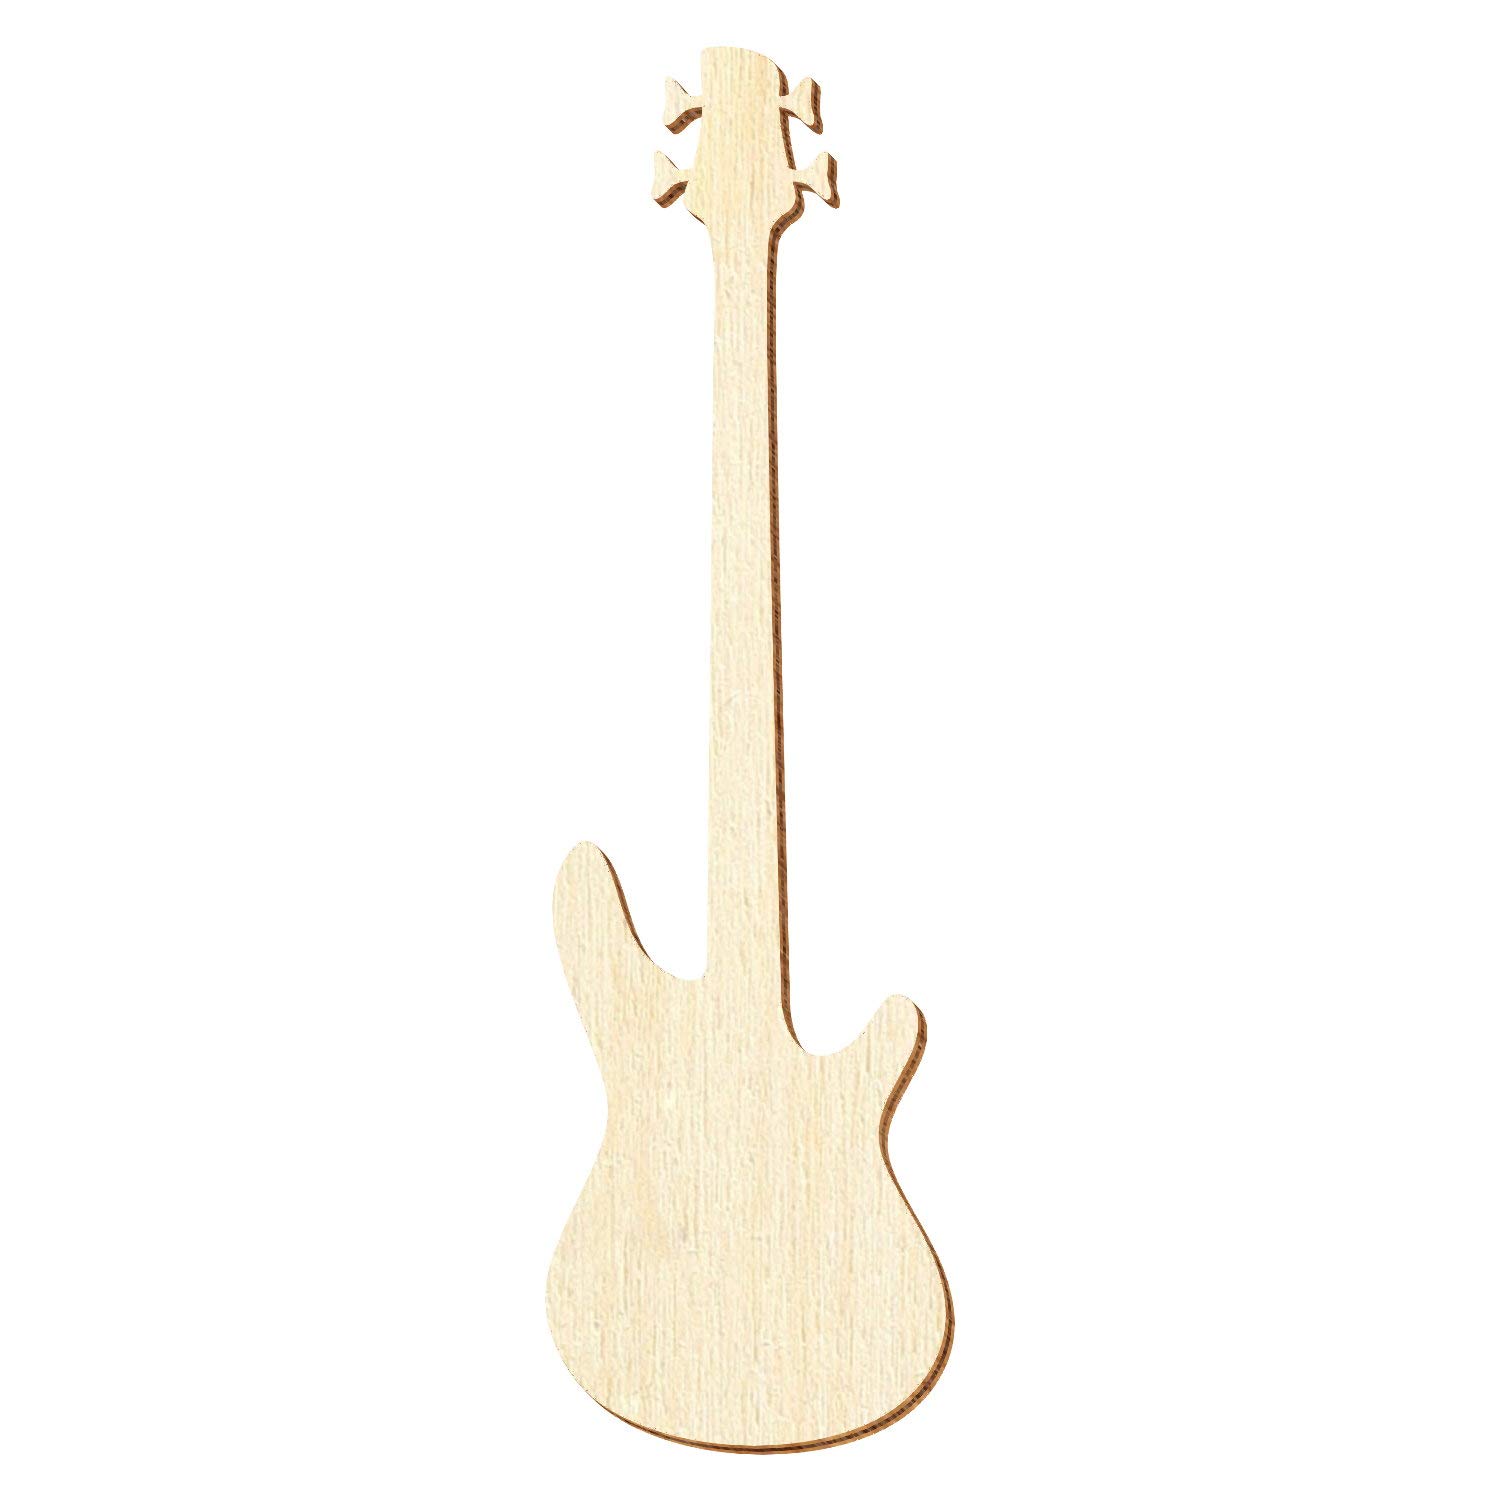 Holz Bassgitarre - Deko Zuschnitte Größenauswahl, Pack mit:25 Stück, Größe:45cm